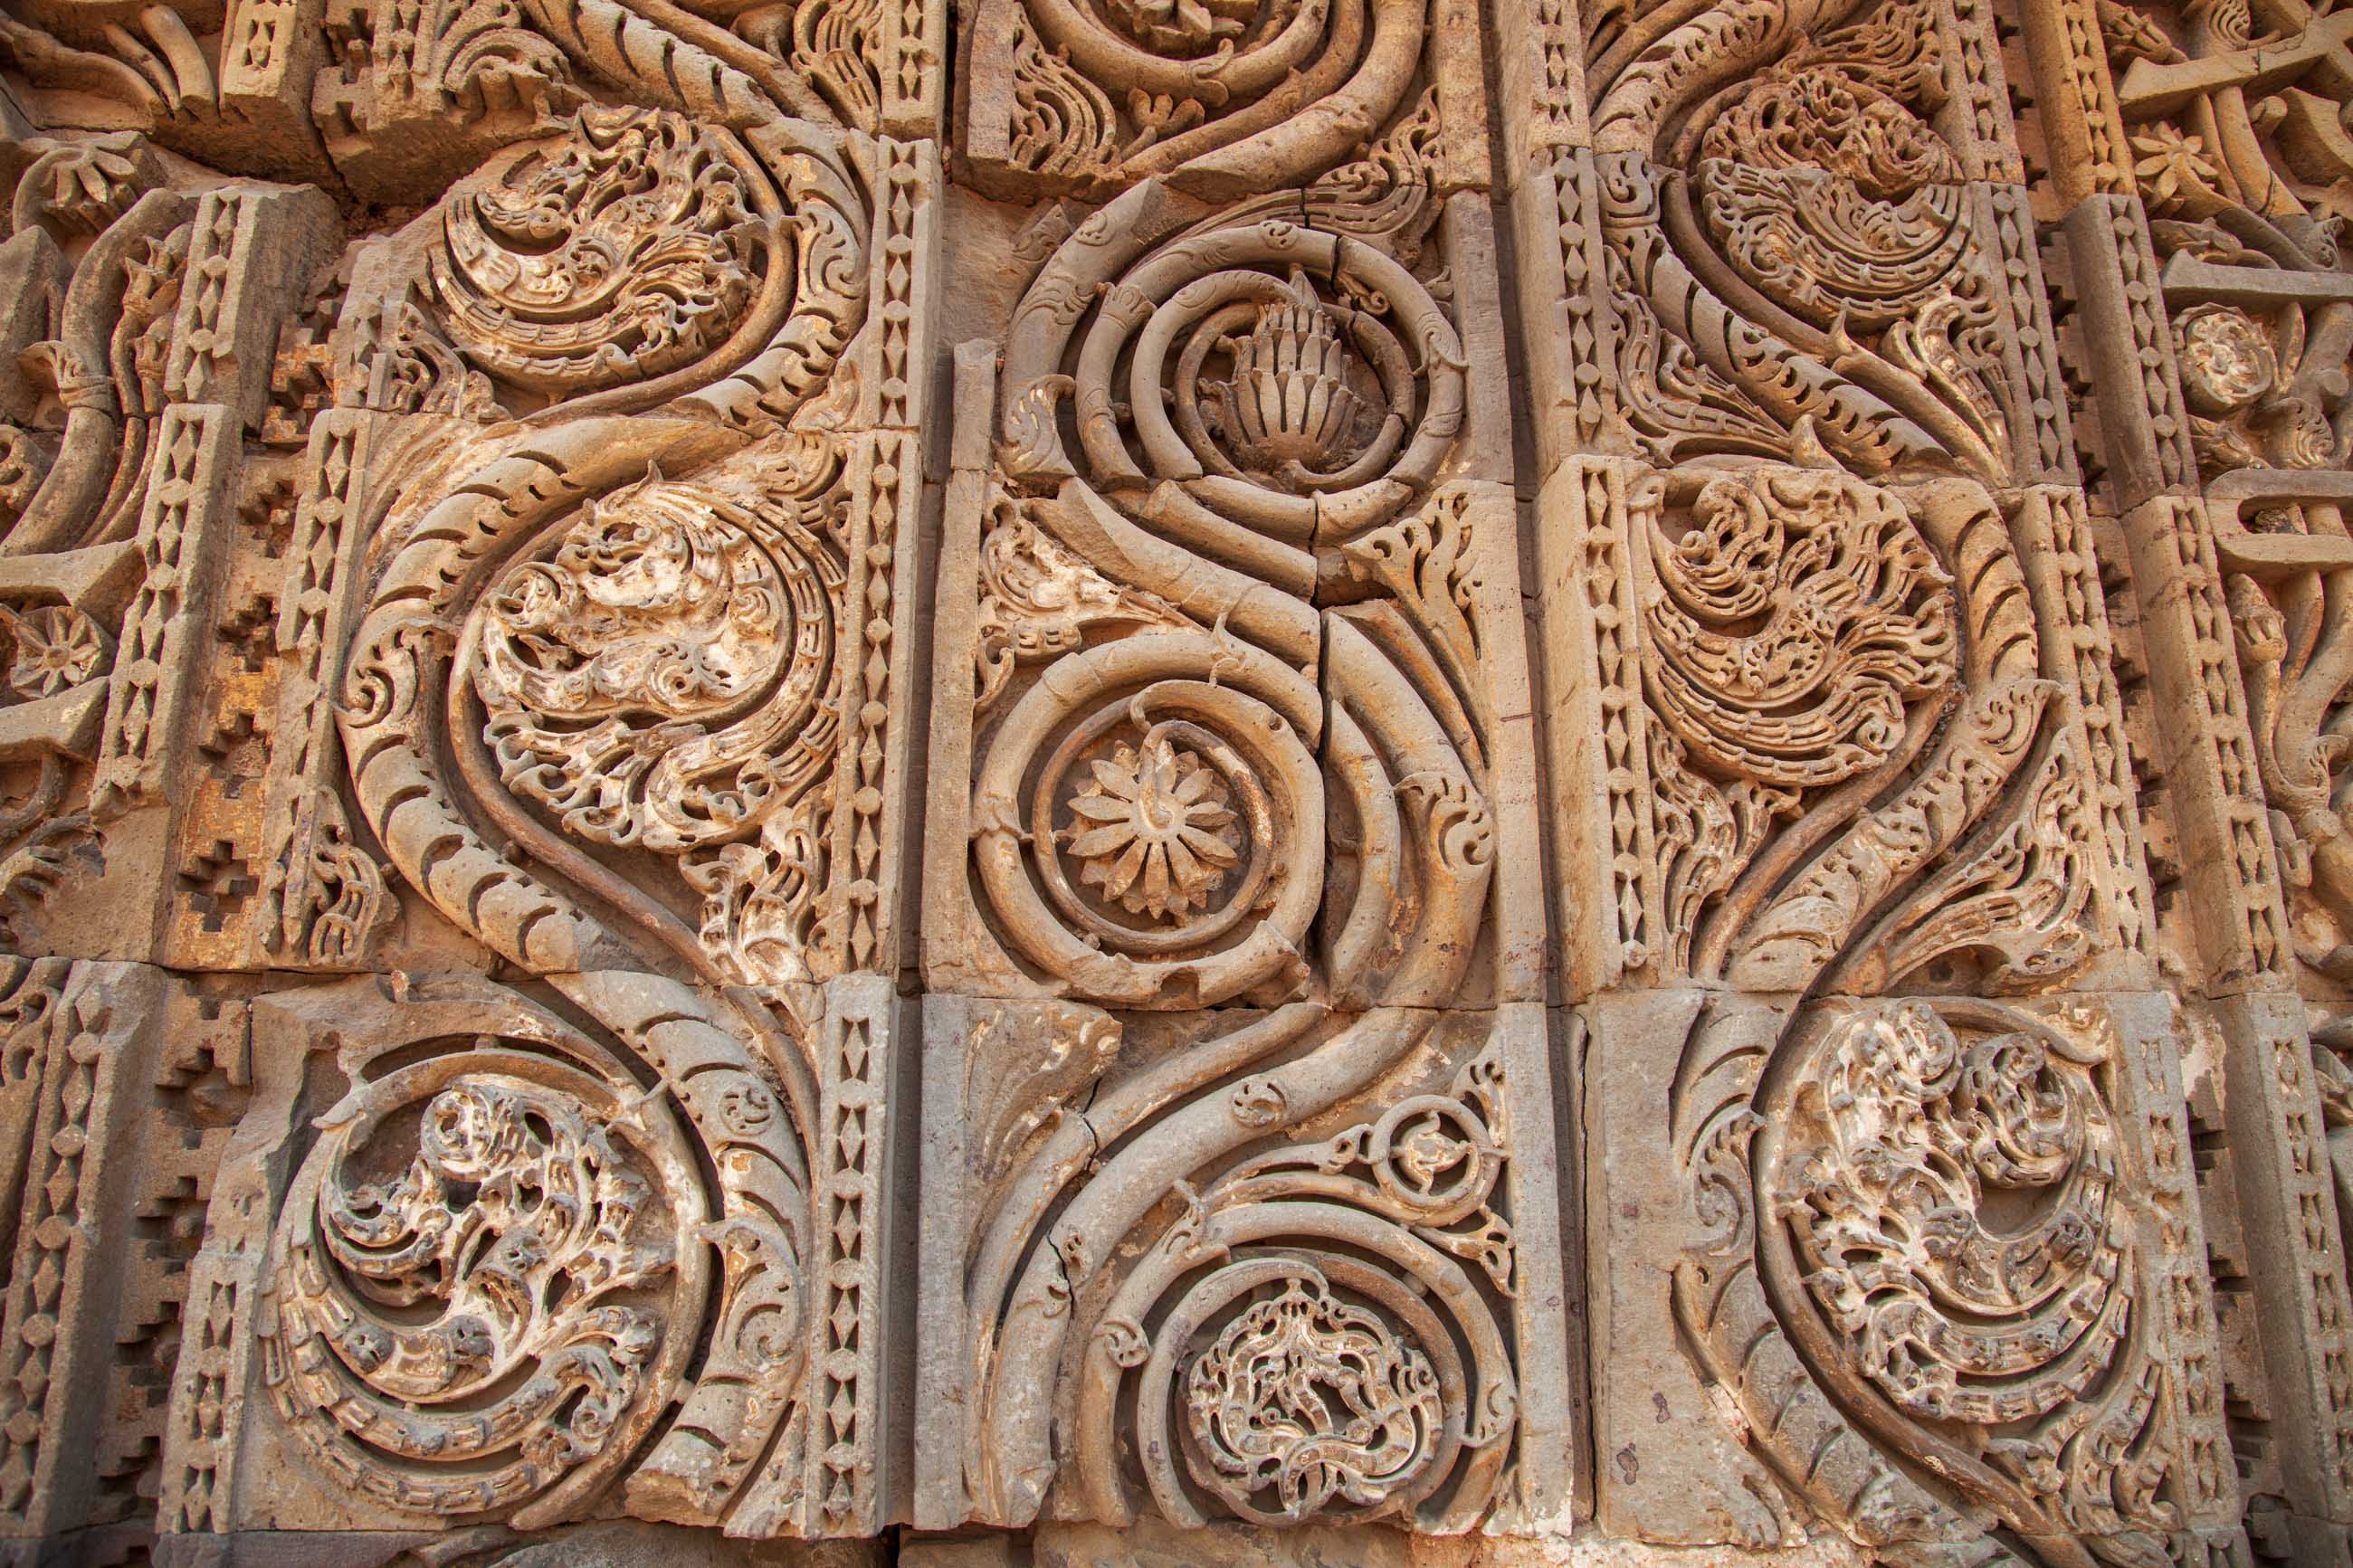 https://bubo.sk/uploads/galleries/4917/samuelklc_india_delhi_qutb-minar_detail_img_0193.jpg